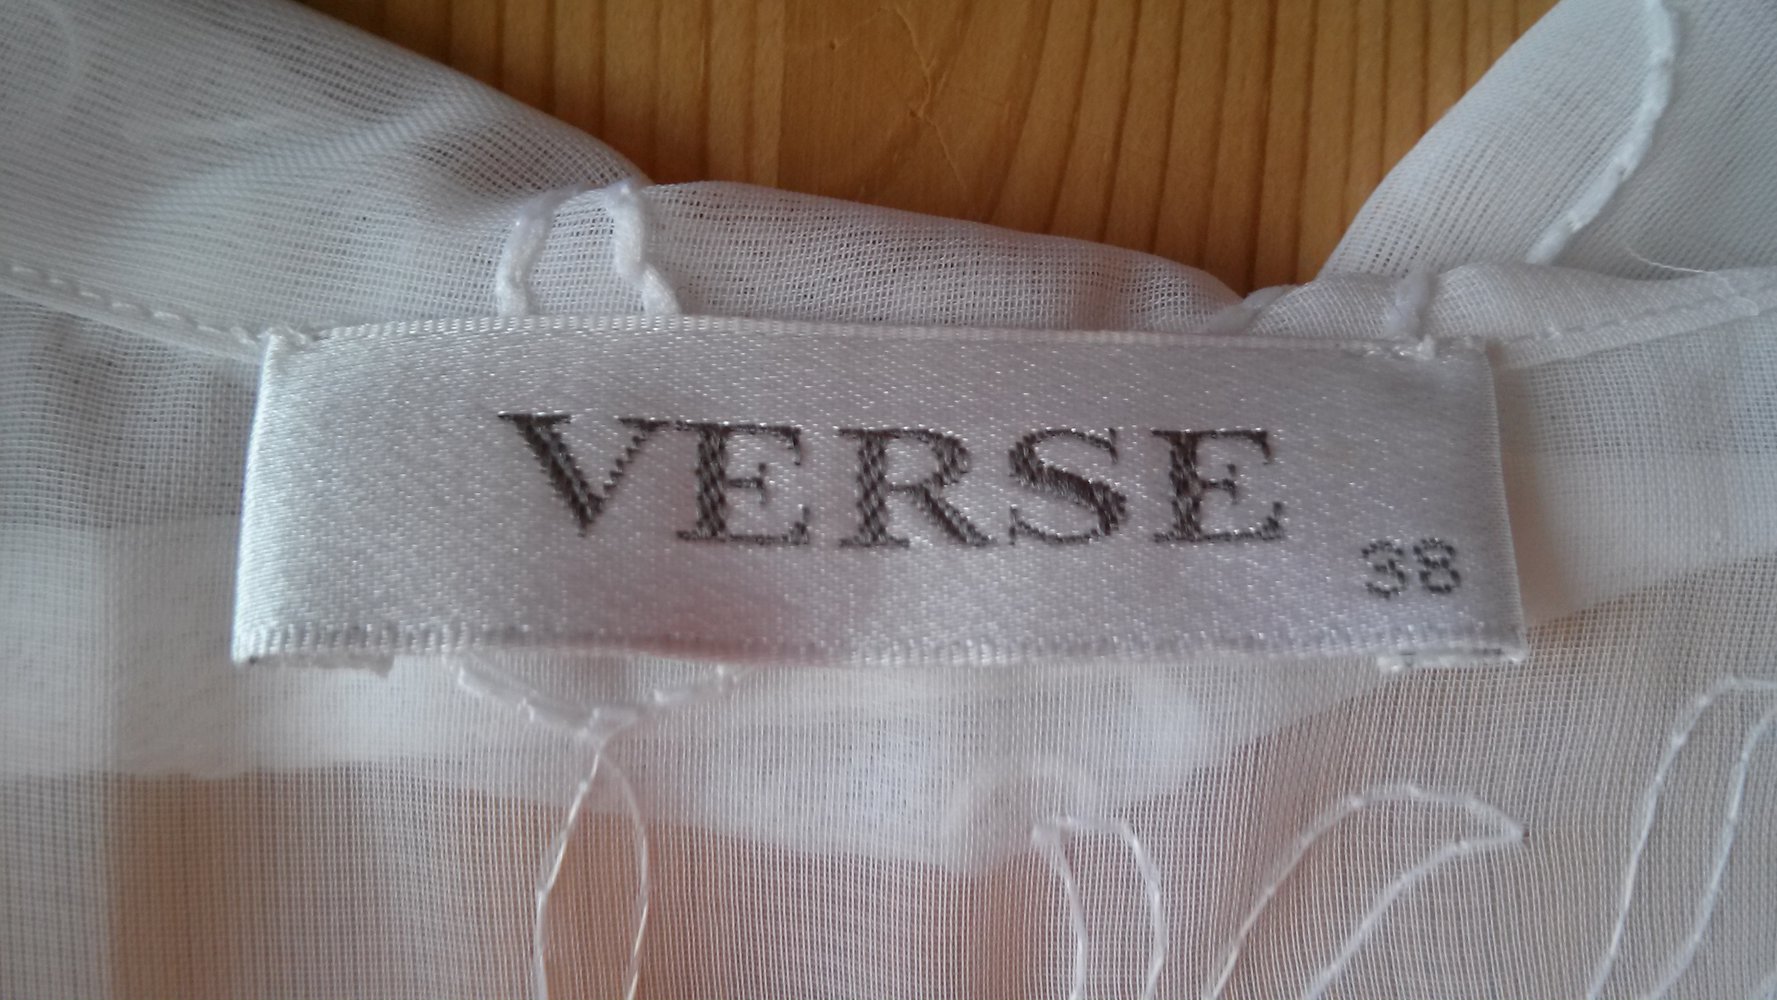 Bluse von VERSE, weiß, durchsichtig, Blumen, Muster, 38, S, Knöpfe, transparent, kurzarm